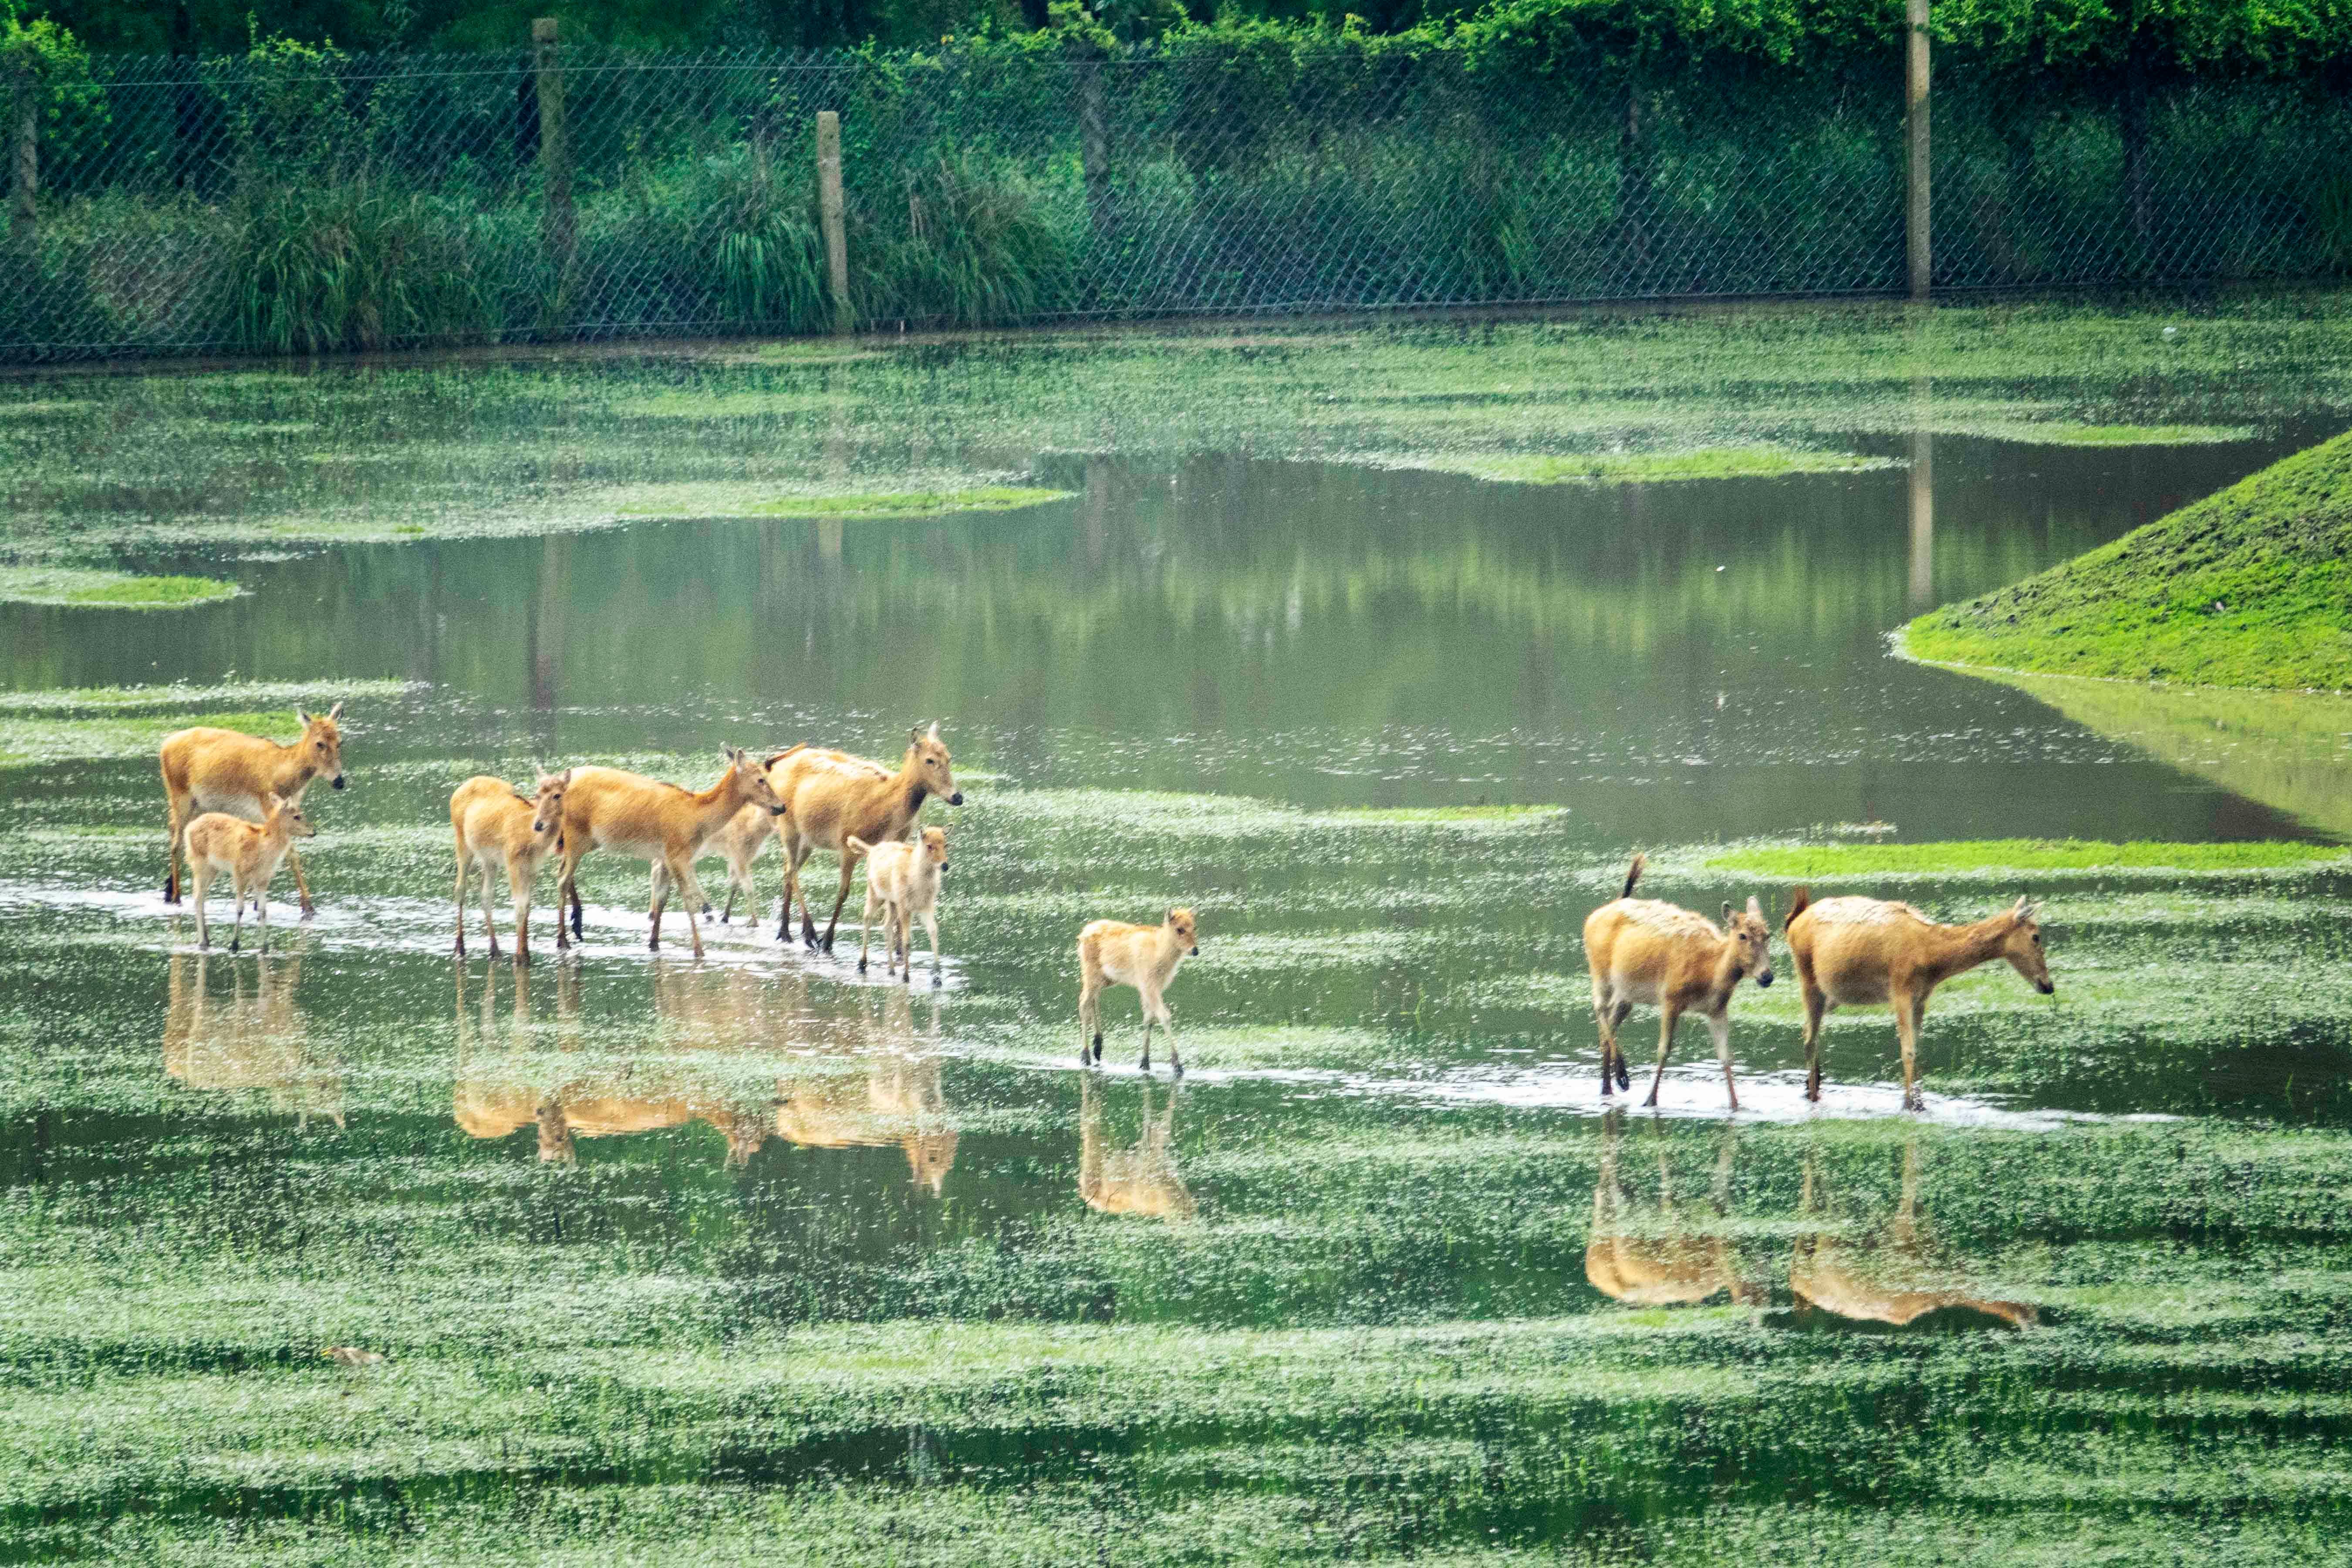 溱湖湿地公园喜添18头麋鹿宝宝